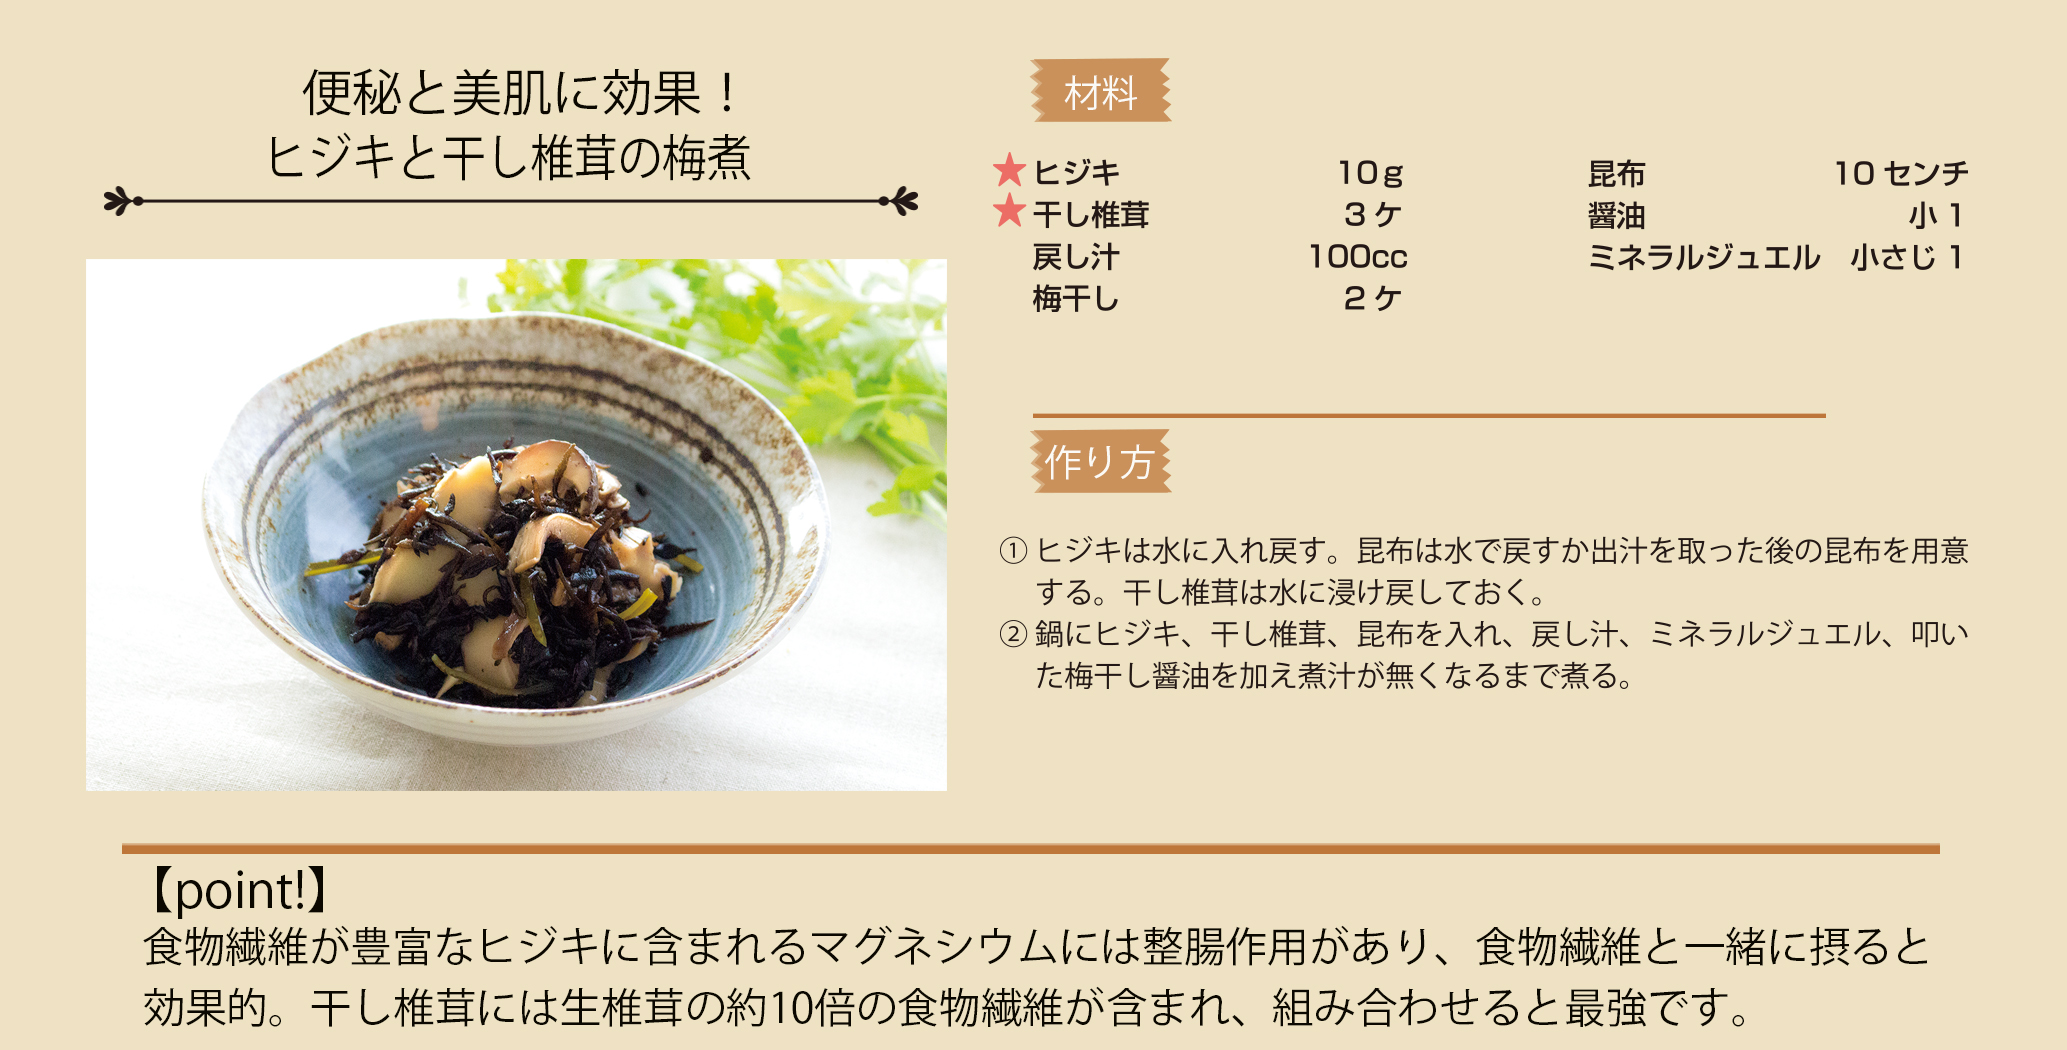 ひじきと干し椎茸の梅煮